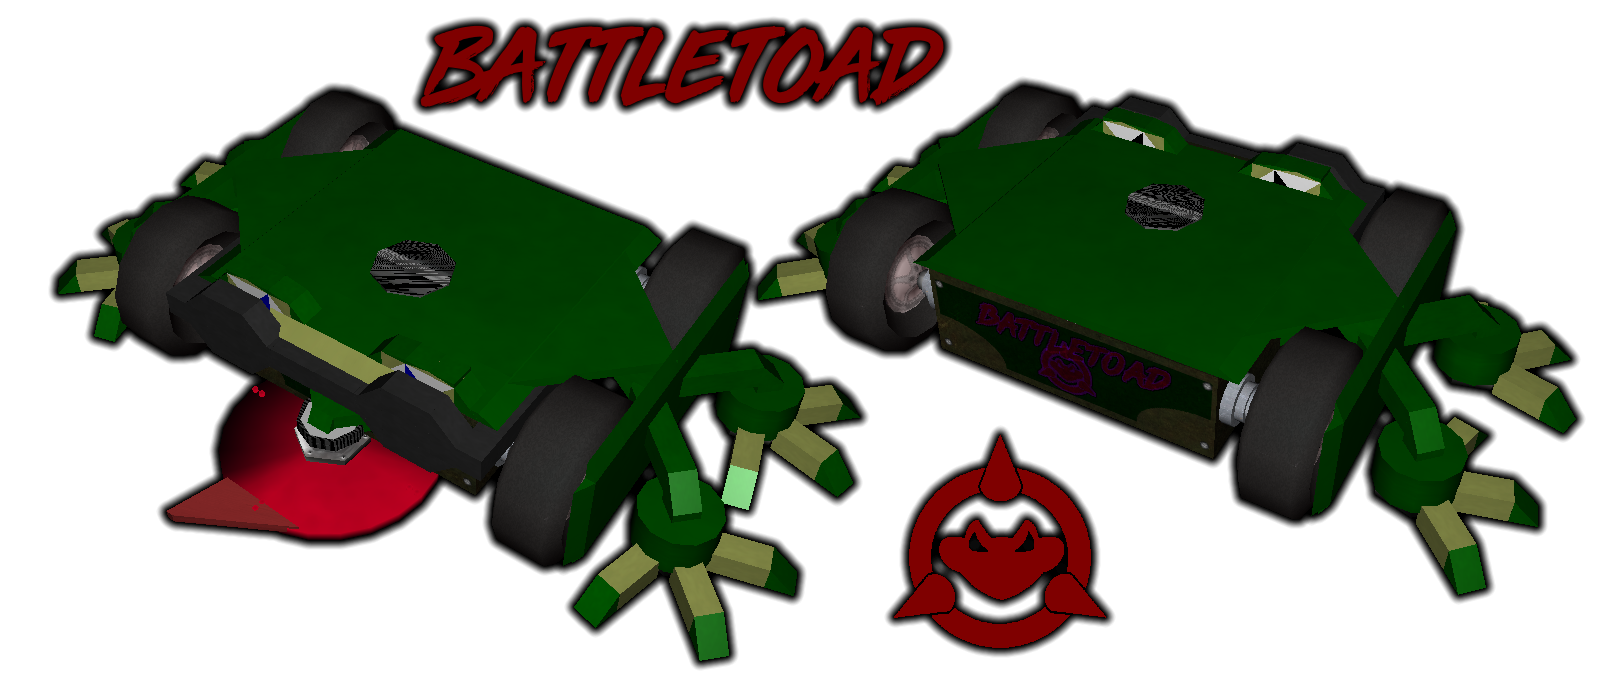 Battletoad2020.png